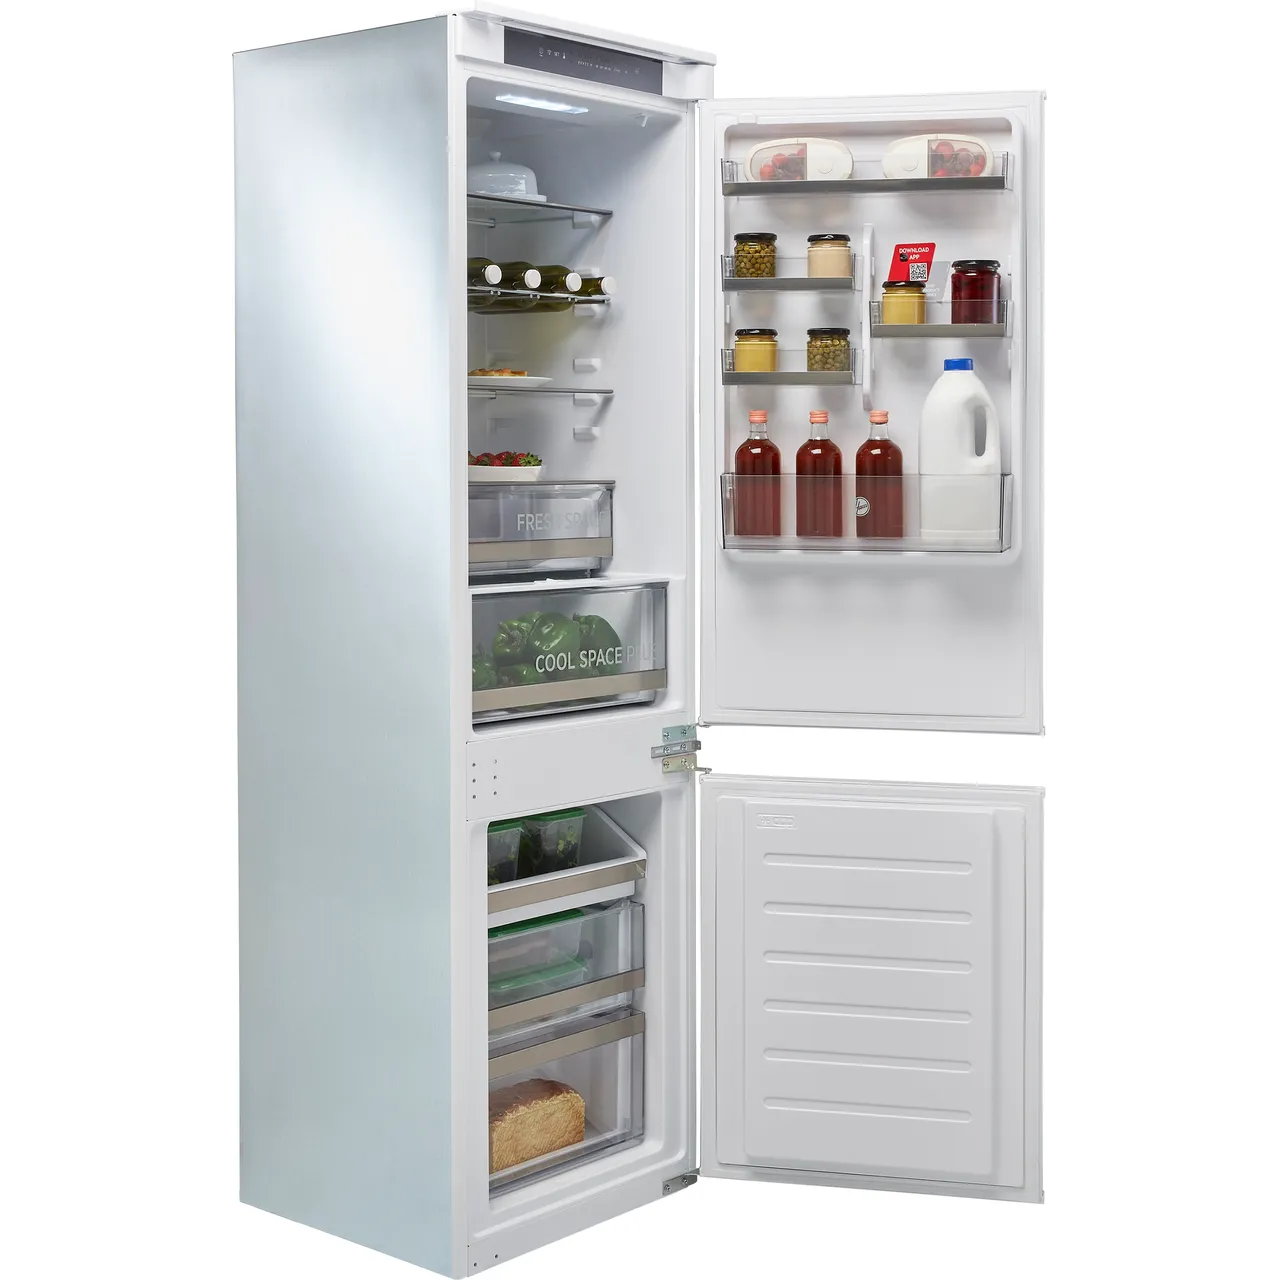 Hoover-Frige freezer-Built-in-White-HOBT5518EWK-0142